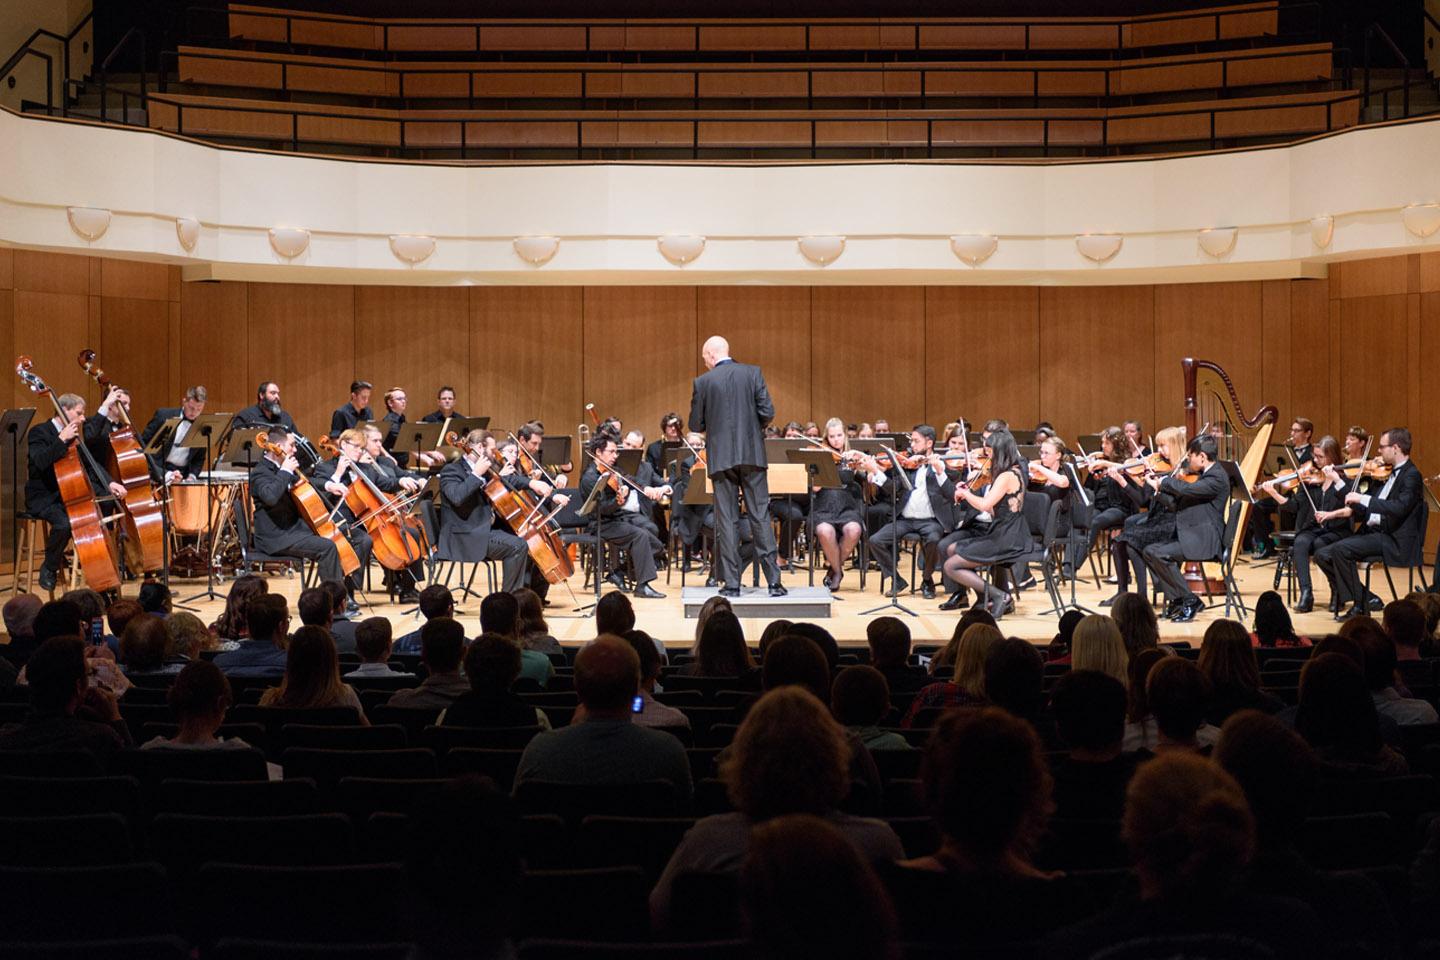 密歇根州立大学丹佛 Symphony 管弦乐队 performing a concert in the King Center Concert Hall